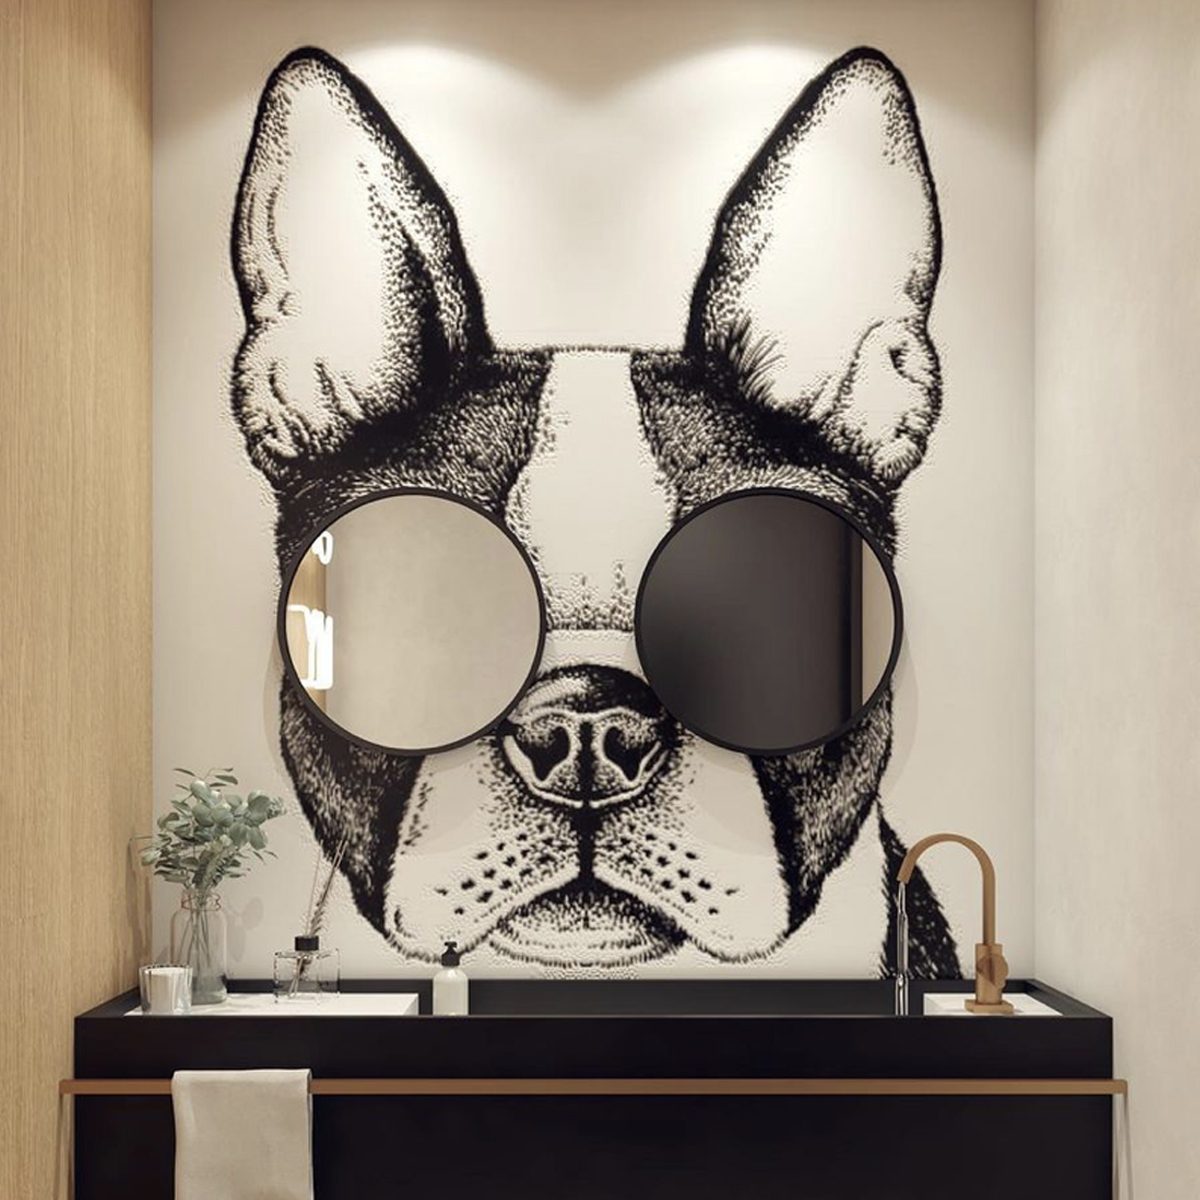 Dog Mural Bathroom Mirror Courtesy Premazzifavoritointeriores Instagram